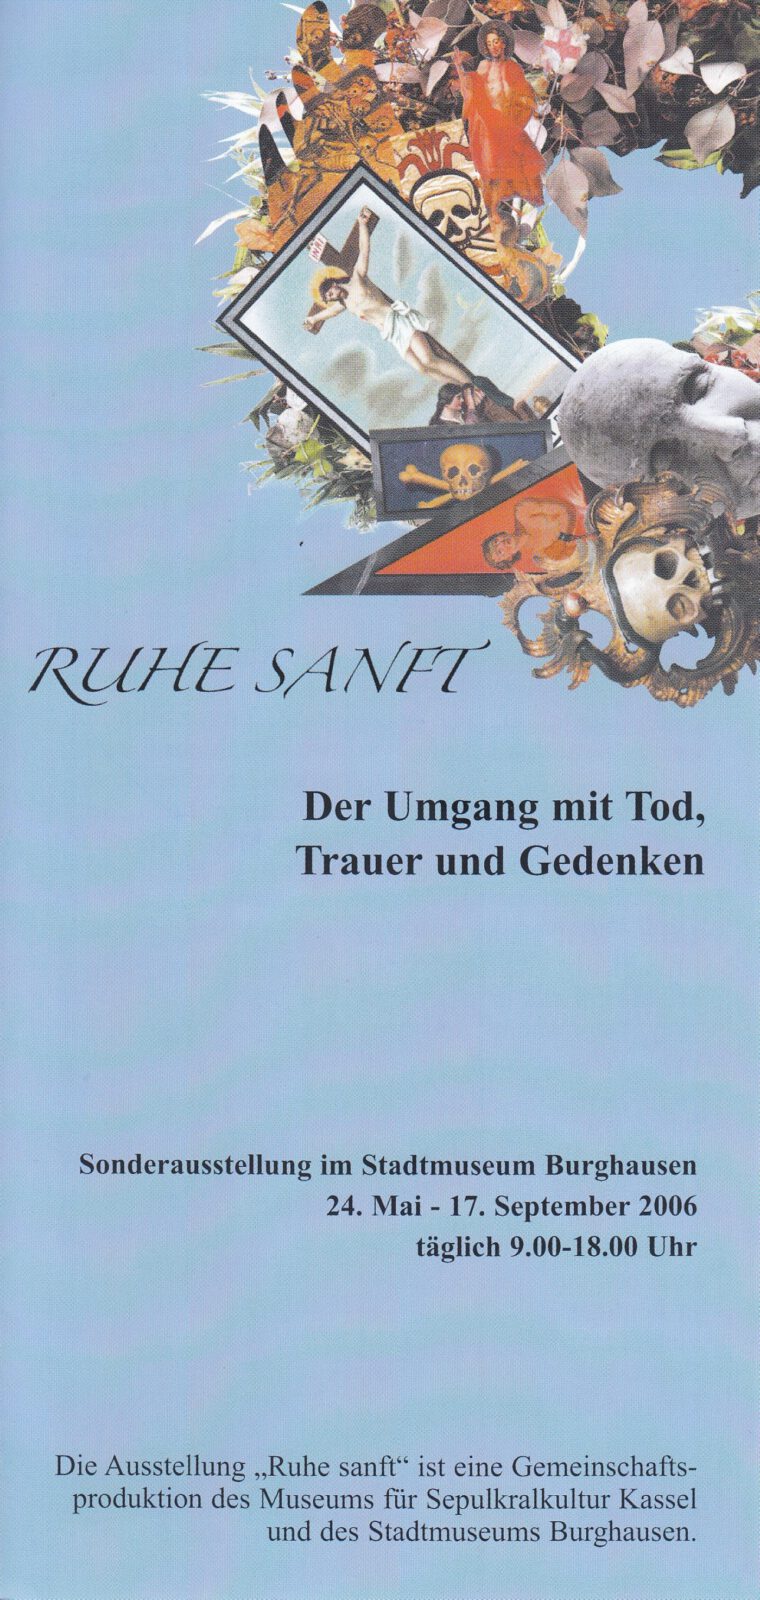 Titelbild Prospekt der Sonderausstellung Ruhe Sanft, 2006. Der Umgang mit Tod, Trauer und Gedenken.